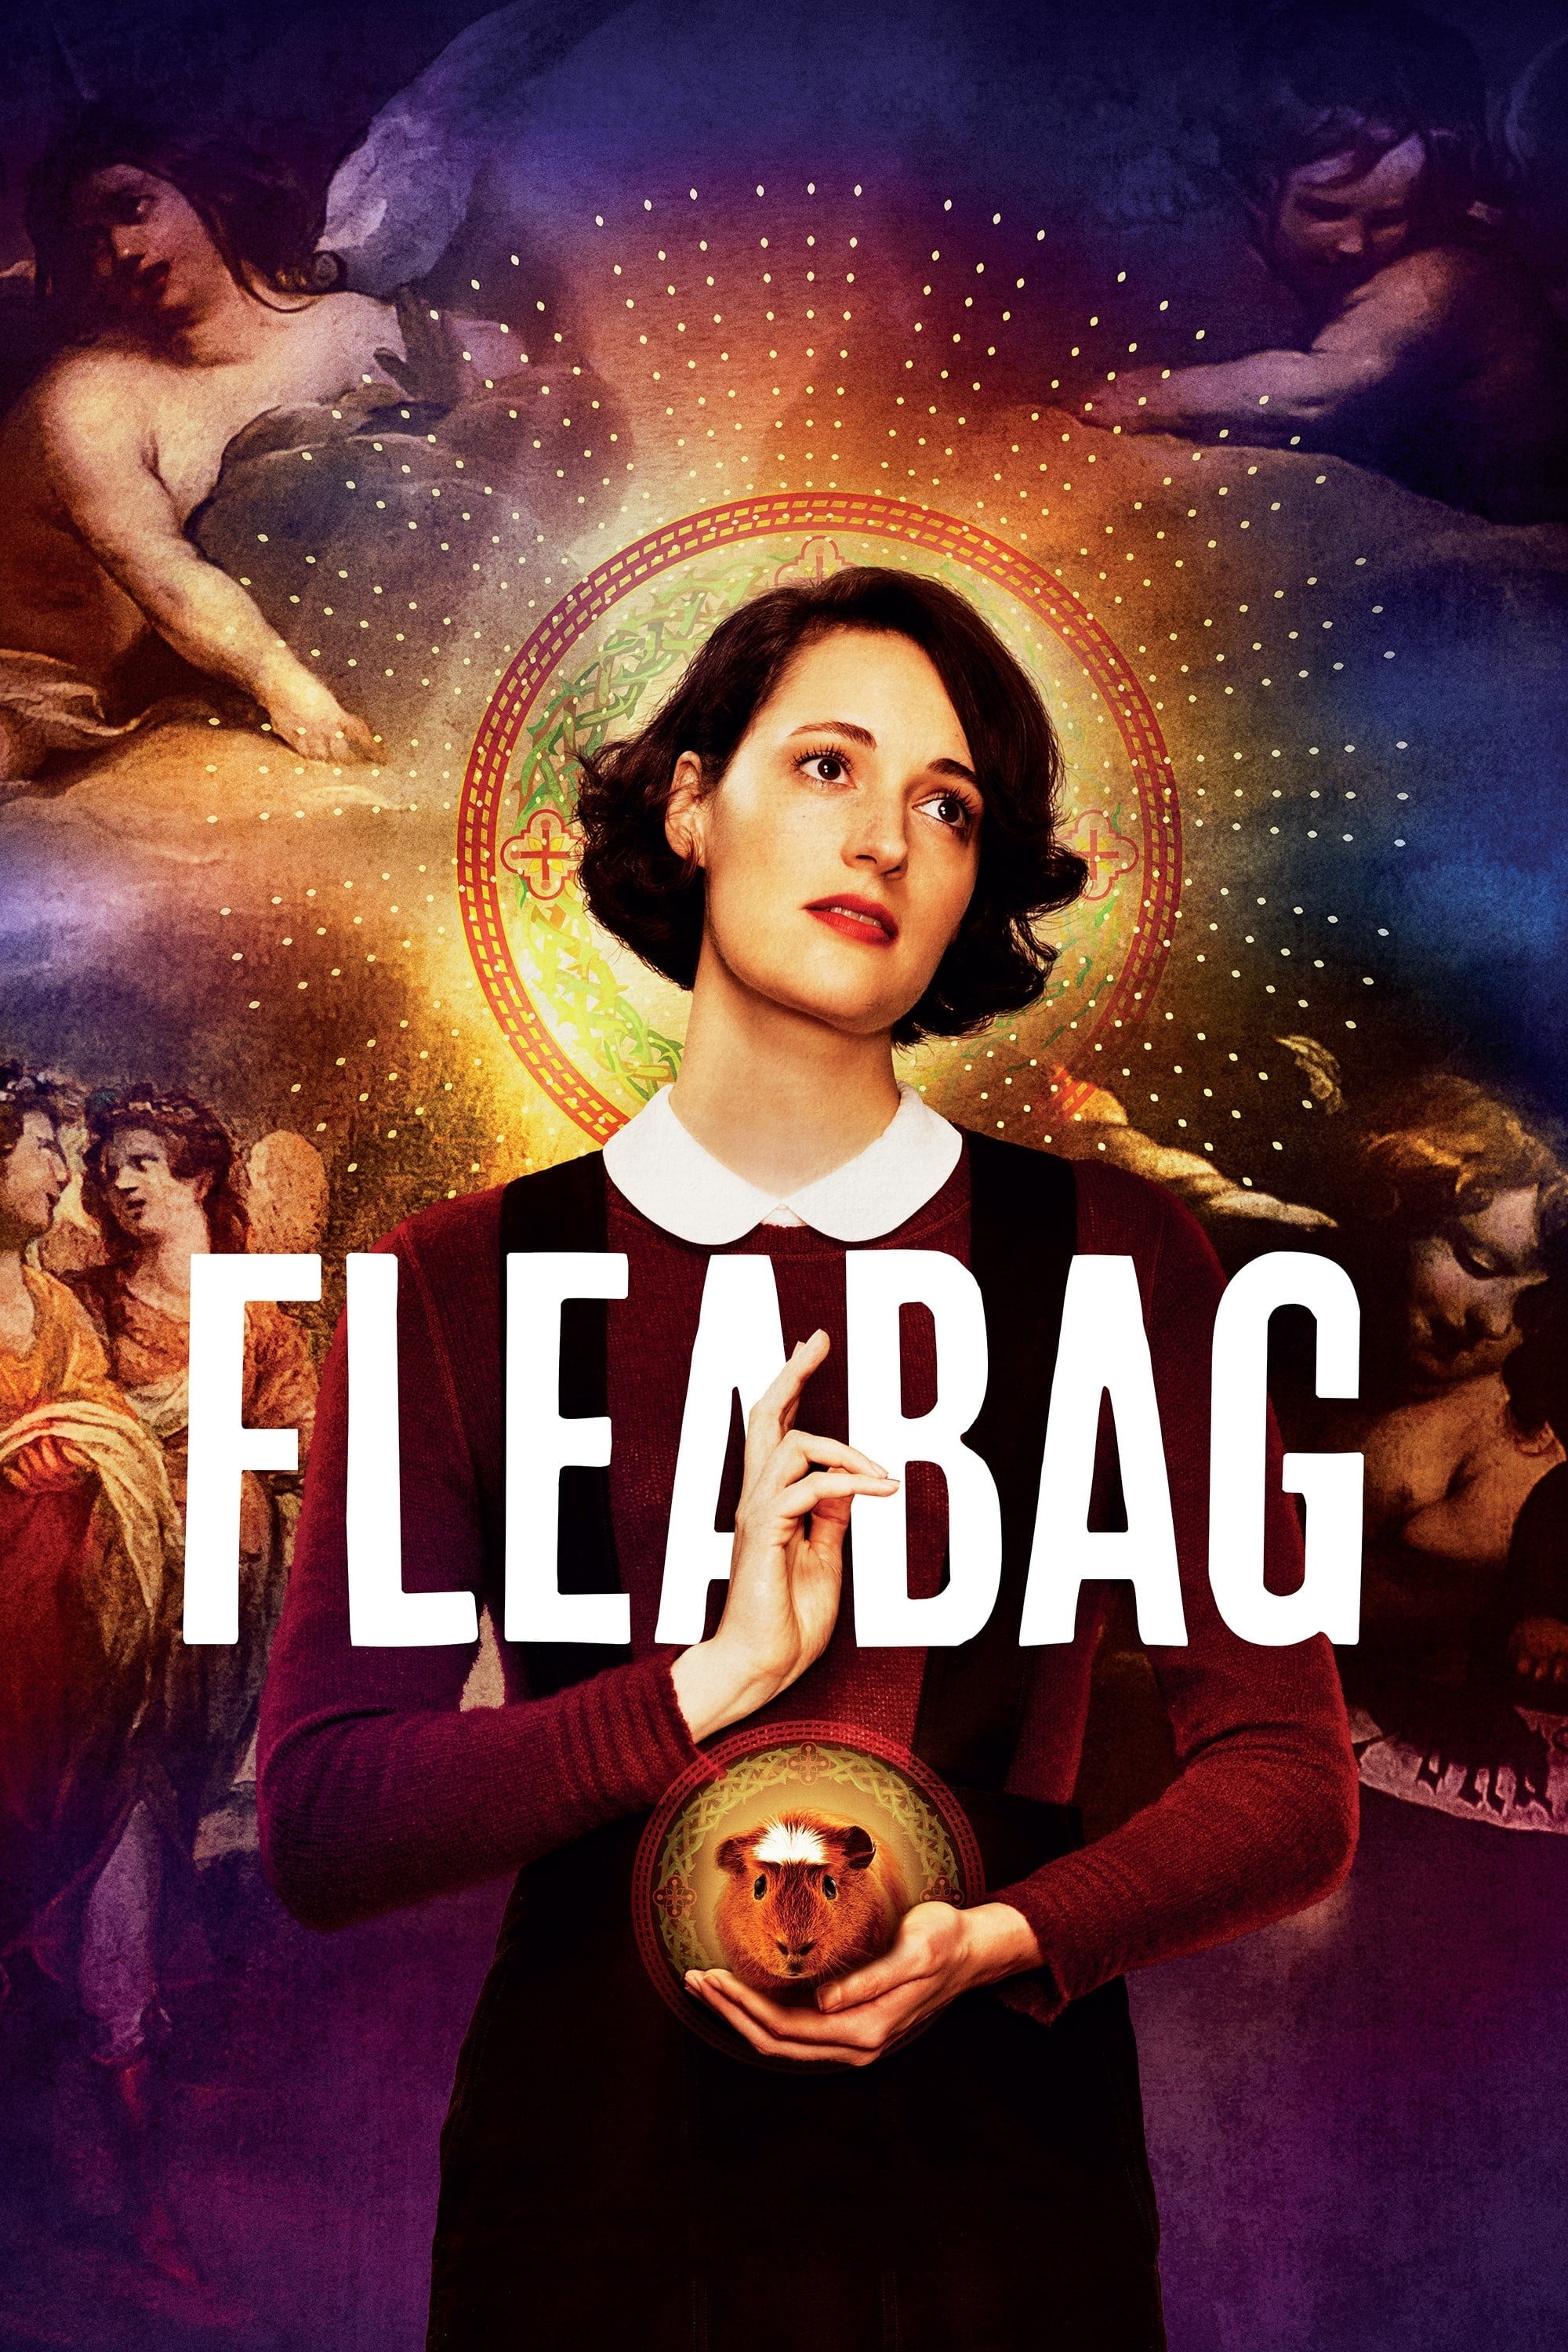 Fleabag rating